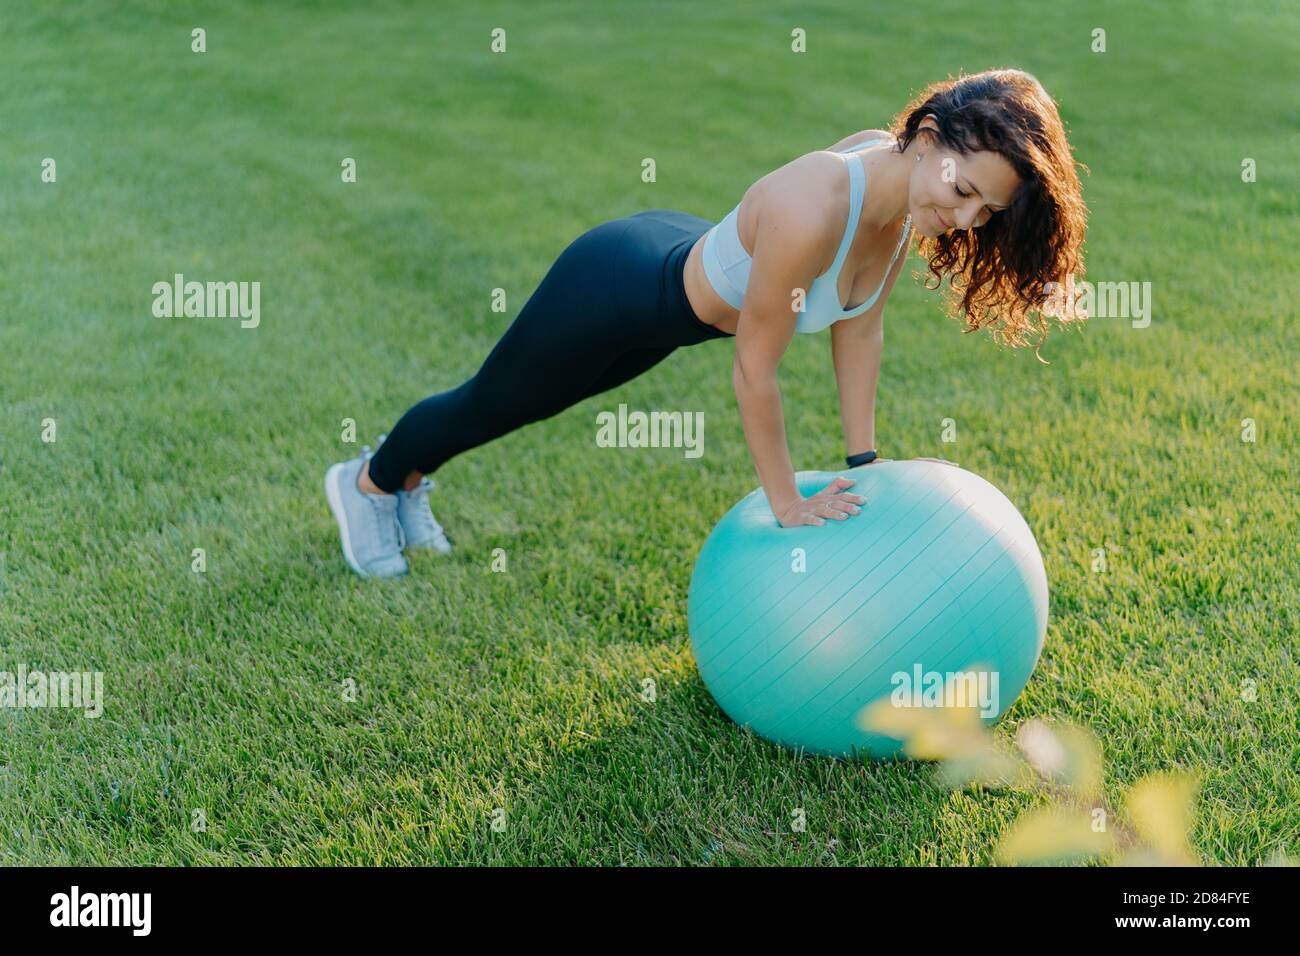 Sportliche Mädchen steht in Plank Pose auf Gymnastikball, in Sportkleidung gekleidet, macht körperliche Übungen auf grünem Rasen im Freien, hält fit und gesund. Peopl Stockfoto